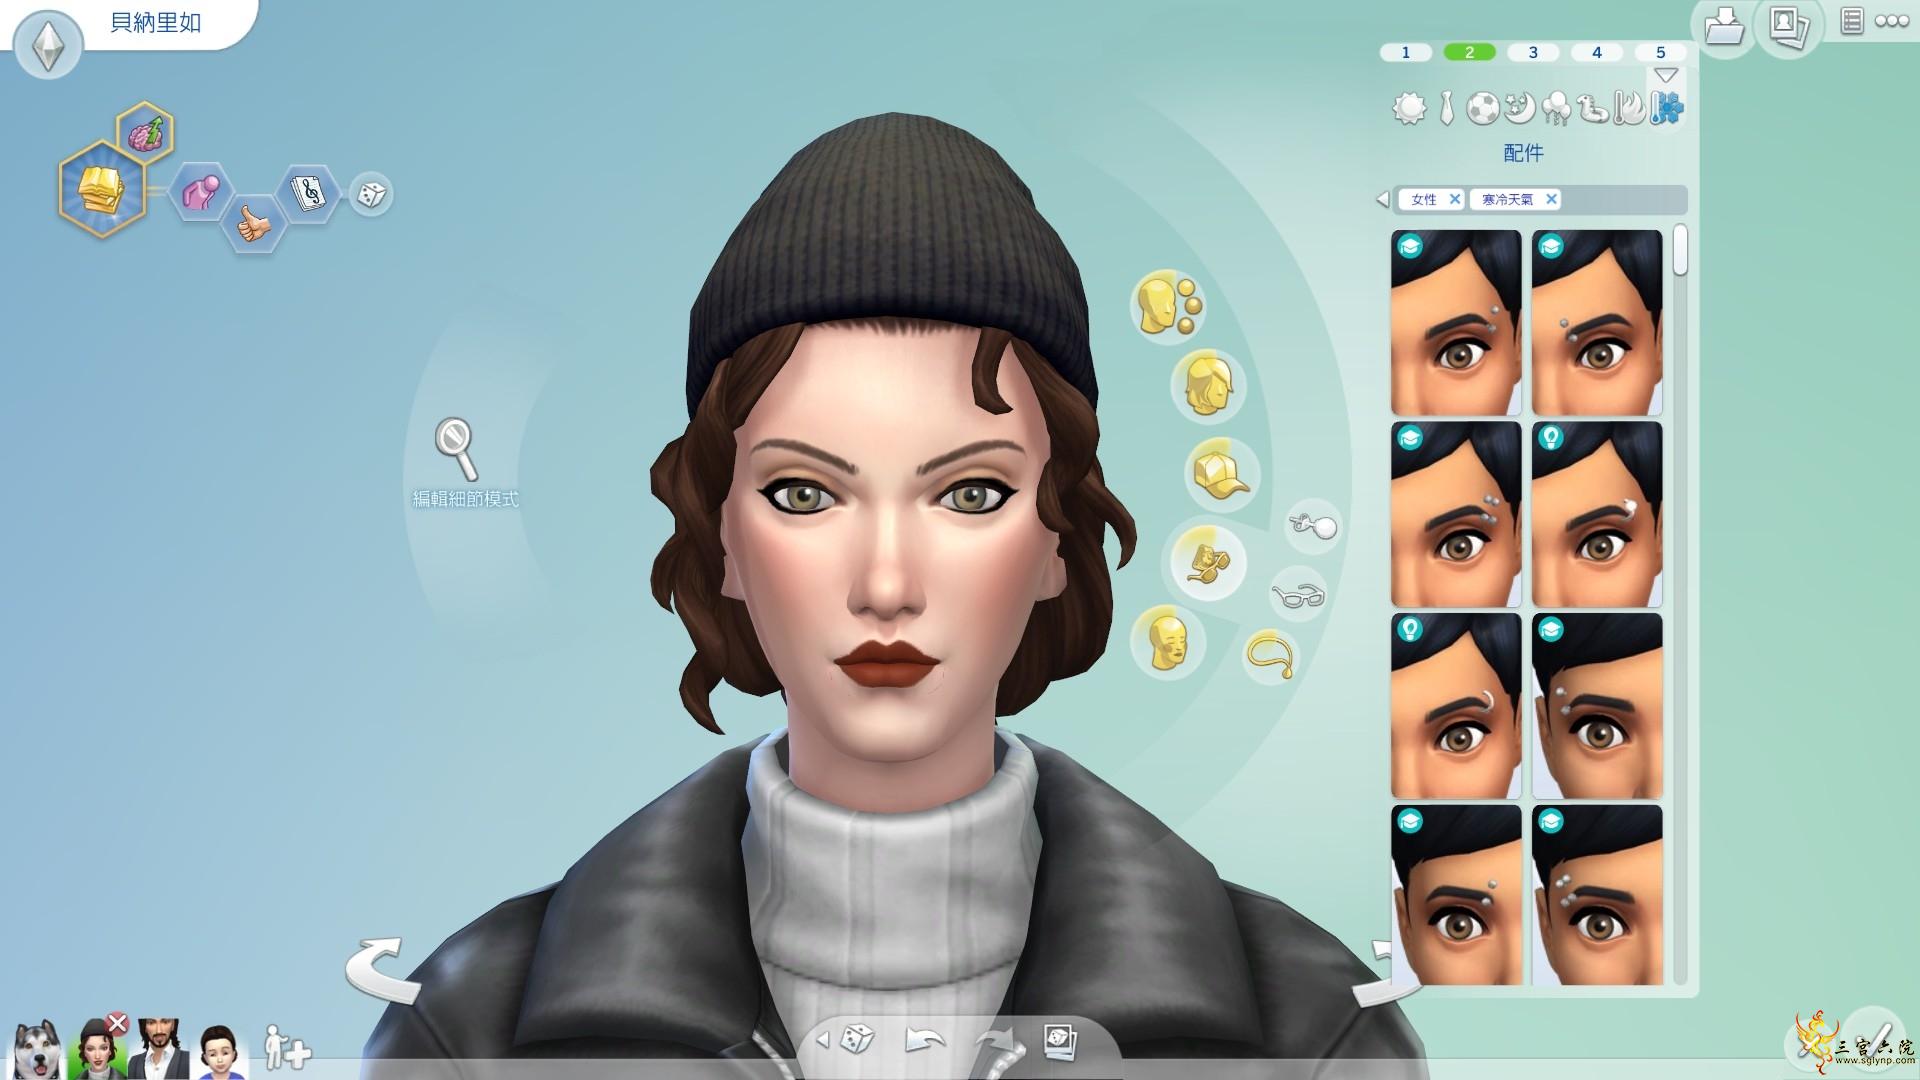 Sims 4 Screenshot 2021.07.17 - 18.49.58.59.png